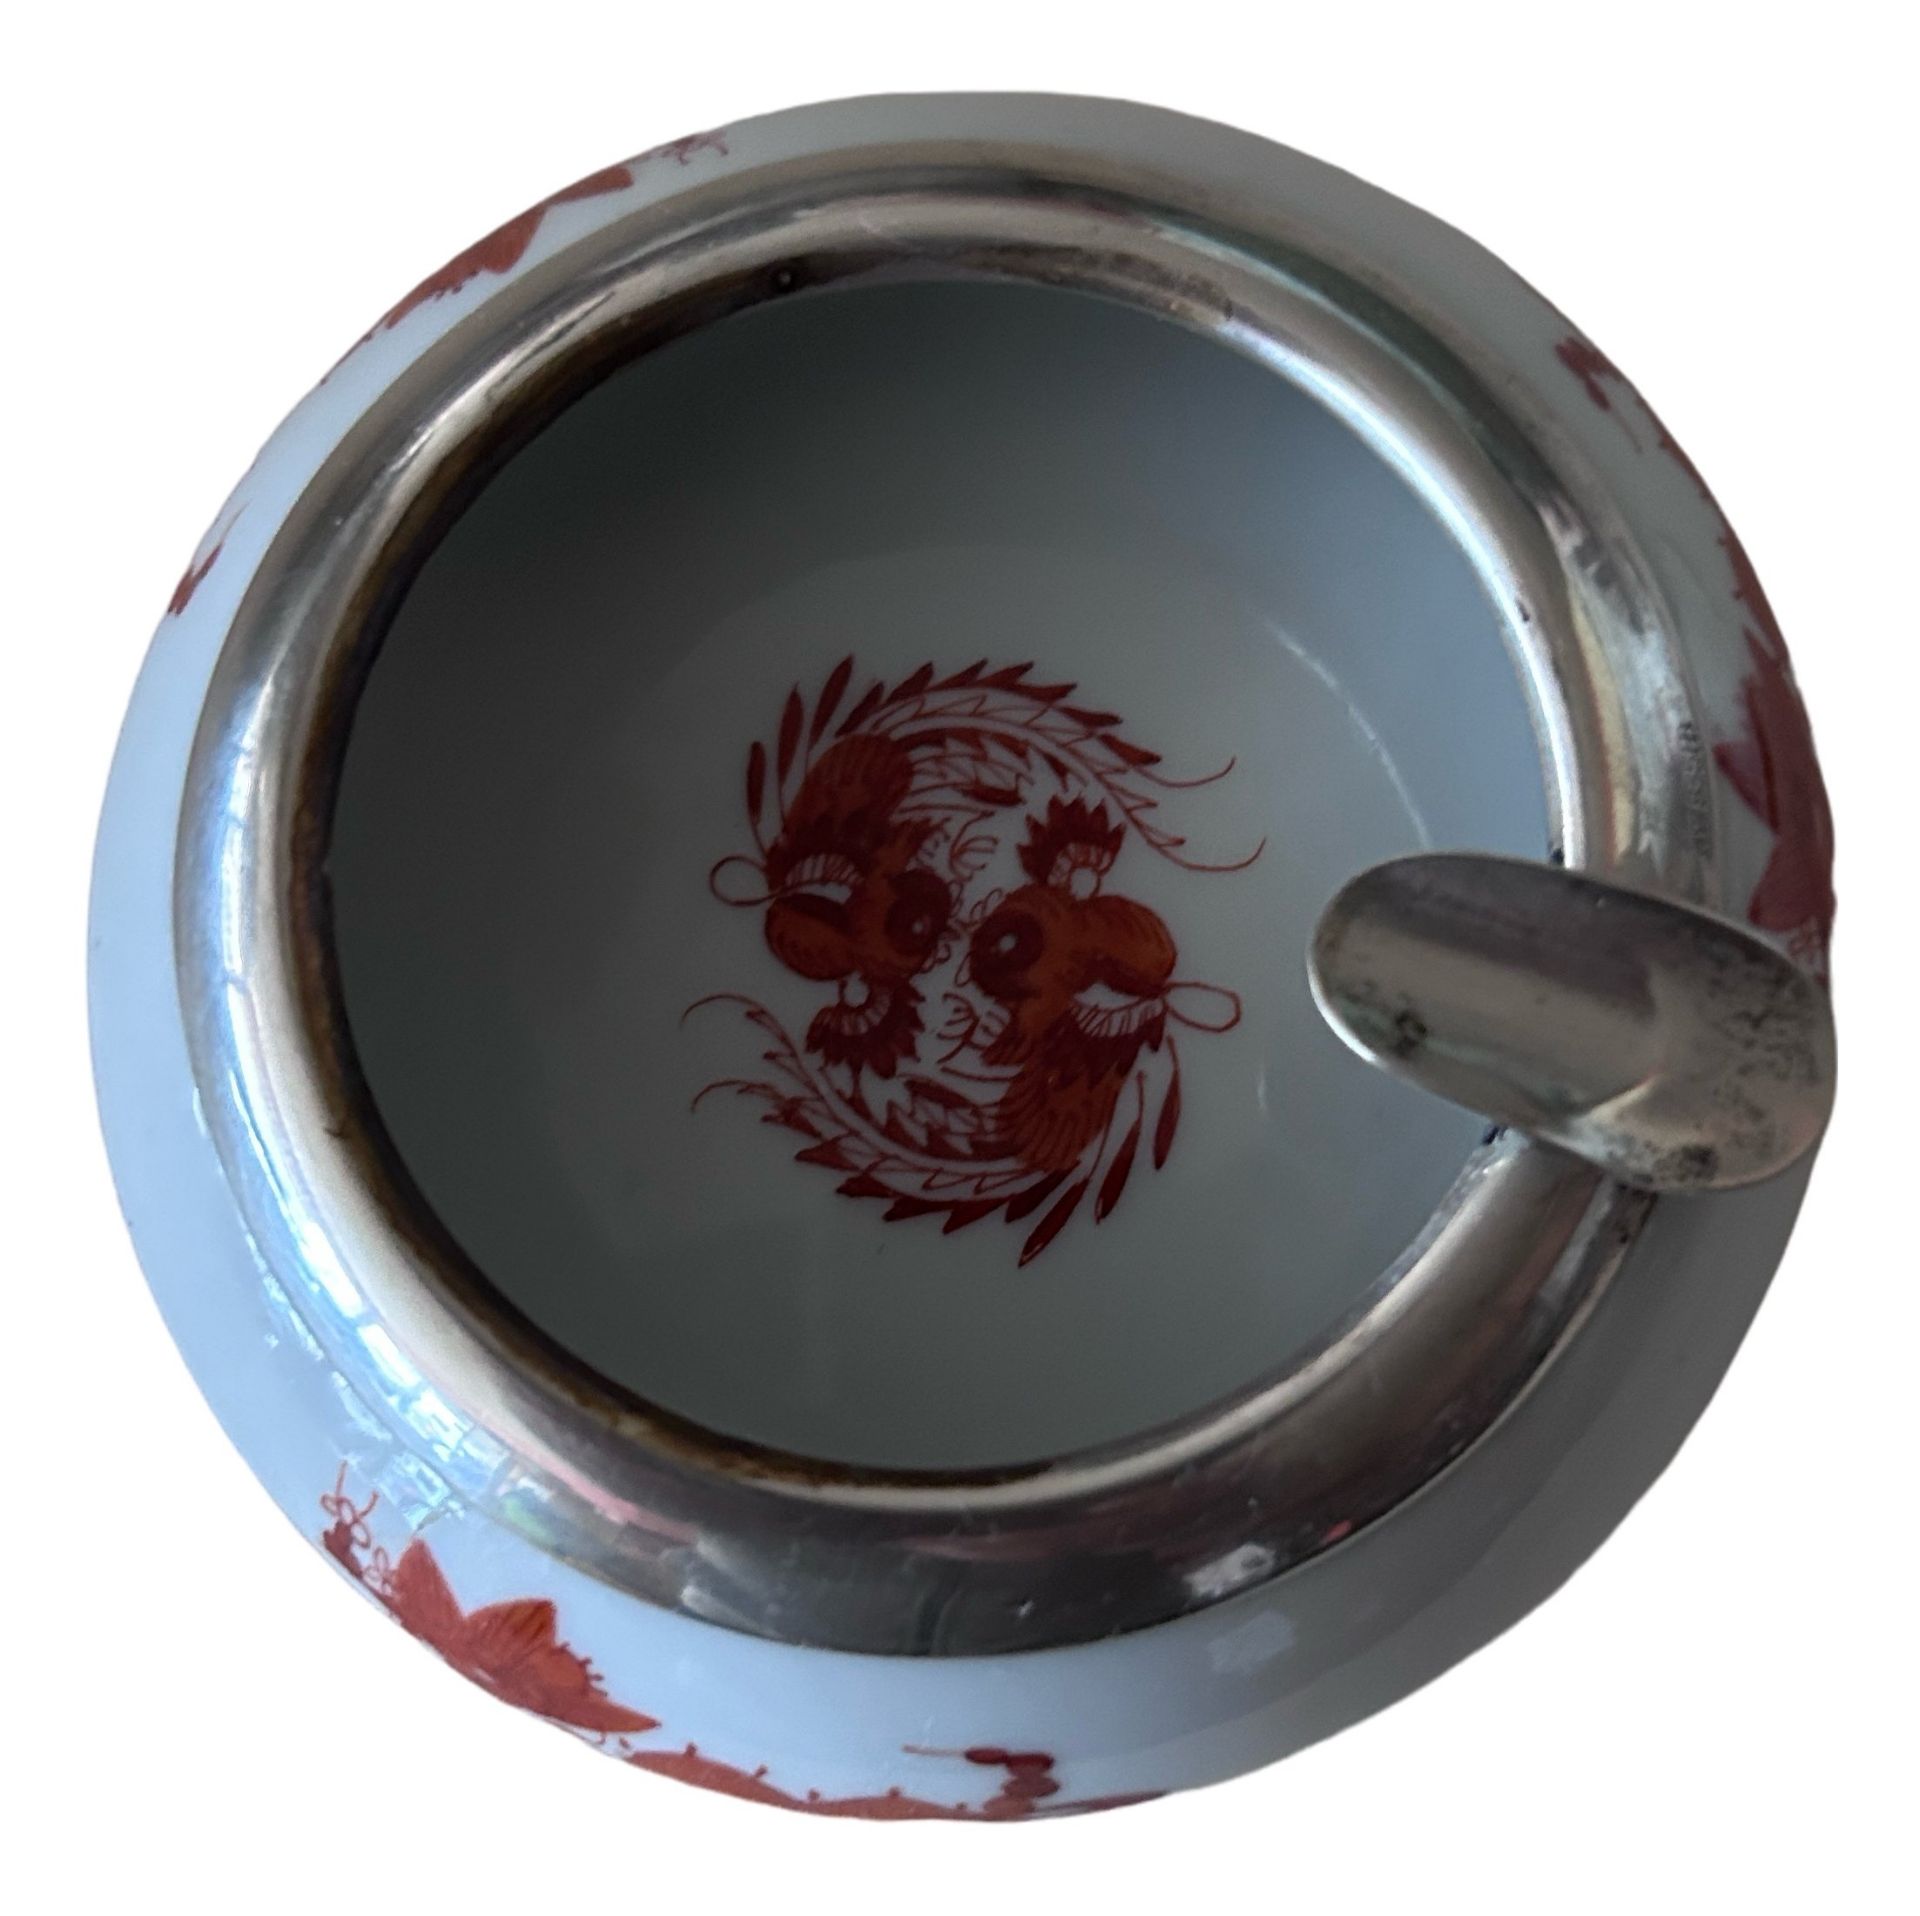 kl. ASCHENBECHER "Meissen"  roter Drache, mit Silberrand - Bild 3 aus 5